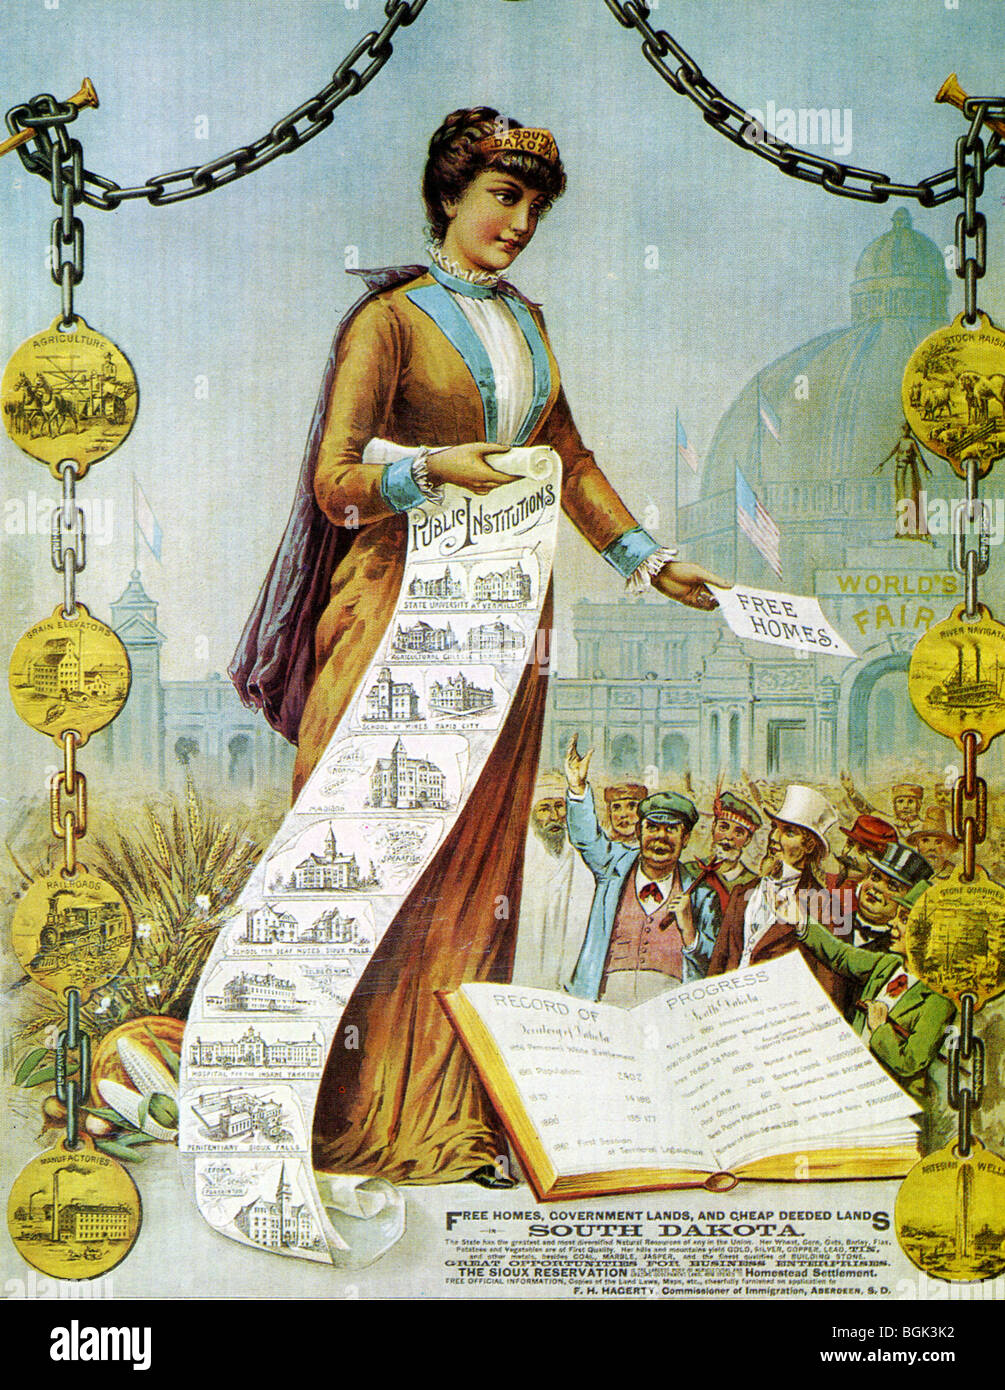 SOUTH DAKOTA LANDBEWILLIGUNGEN Plakat 1890 - siehe Beschreibung unten für details Stockfoto